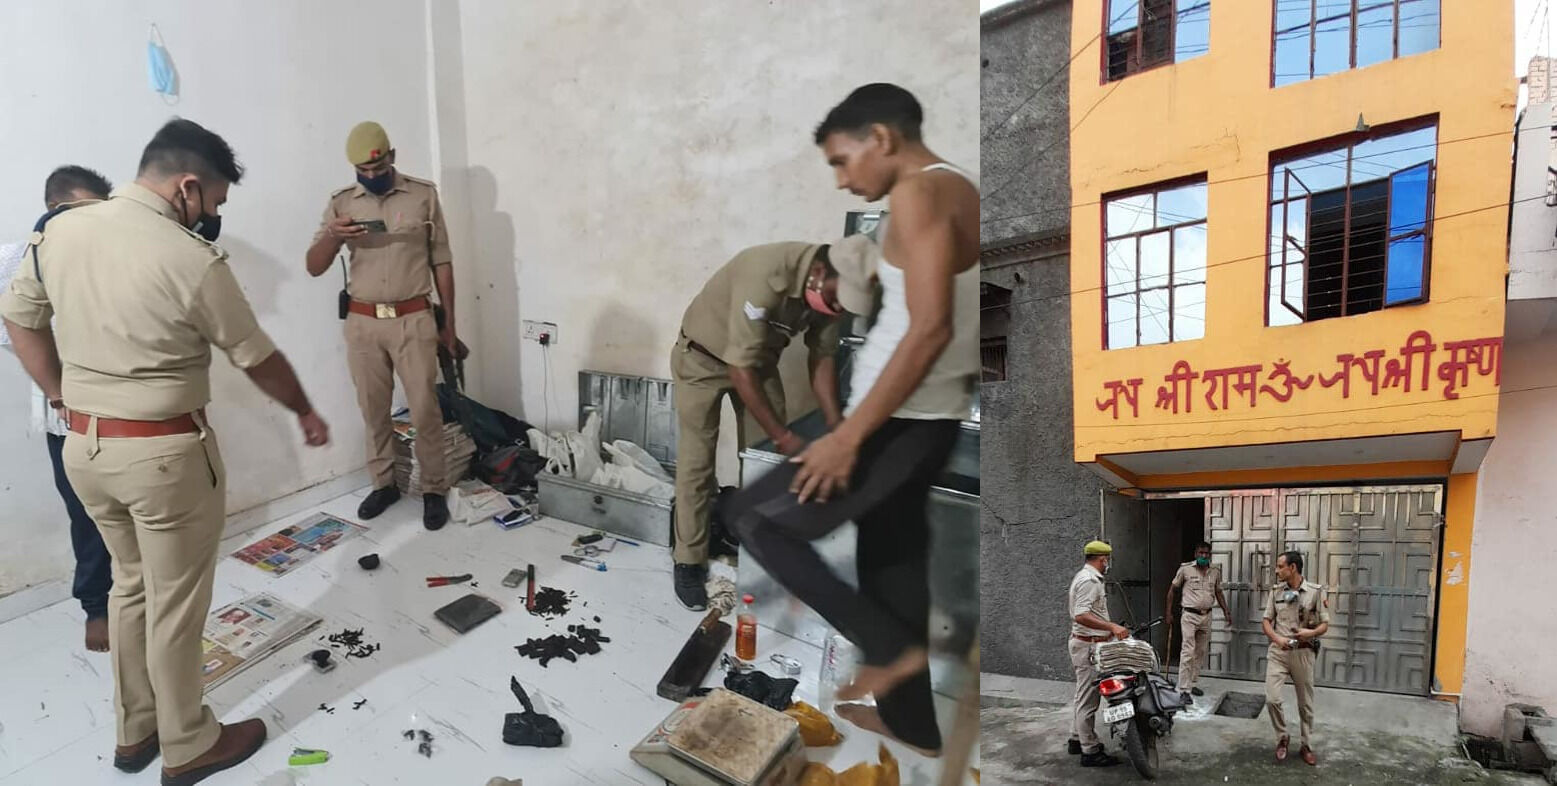 UP : मेरठ में पुलिस का छापा, 28 किलो गांजा, चार किलो चरस व 220 किलो भांग के साथ चार गिरफ्तार